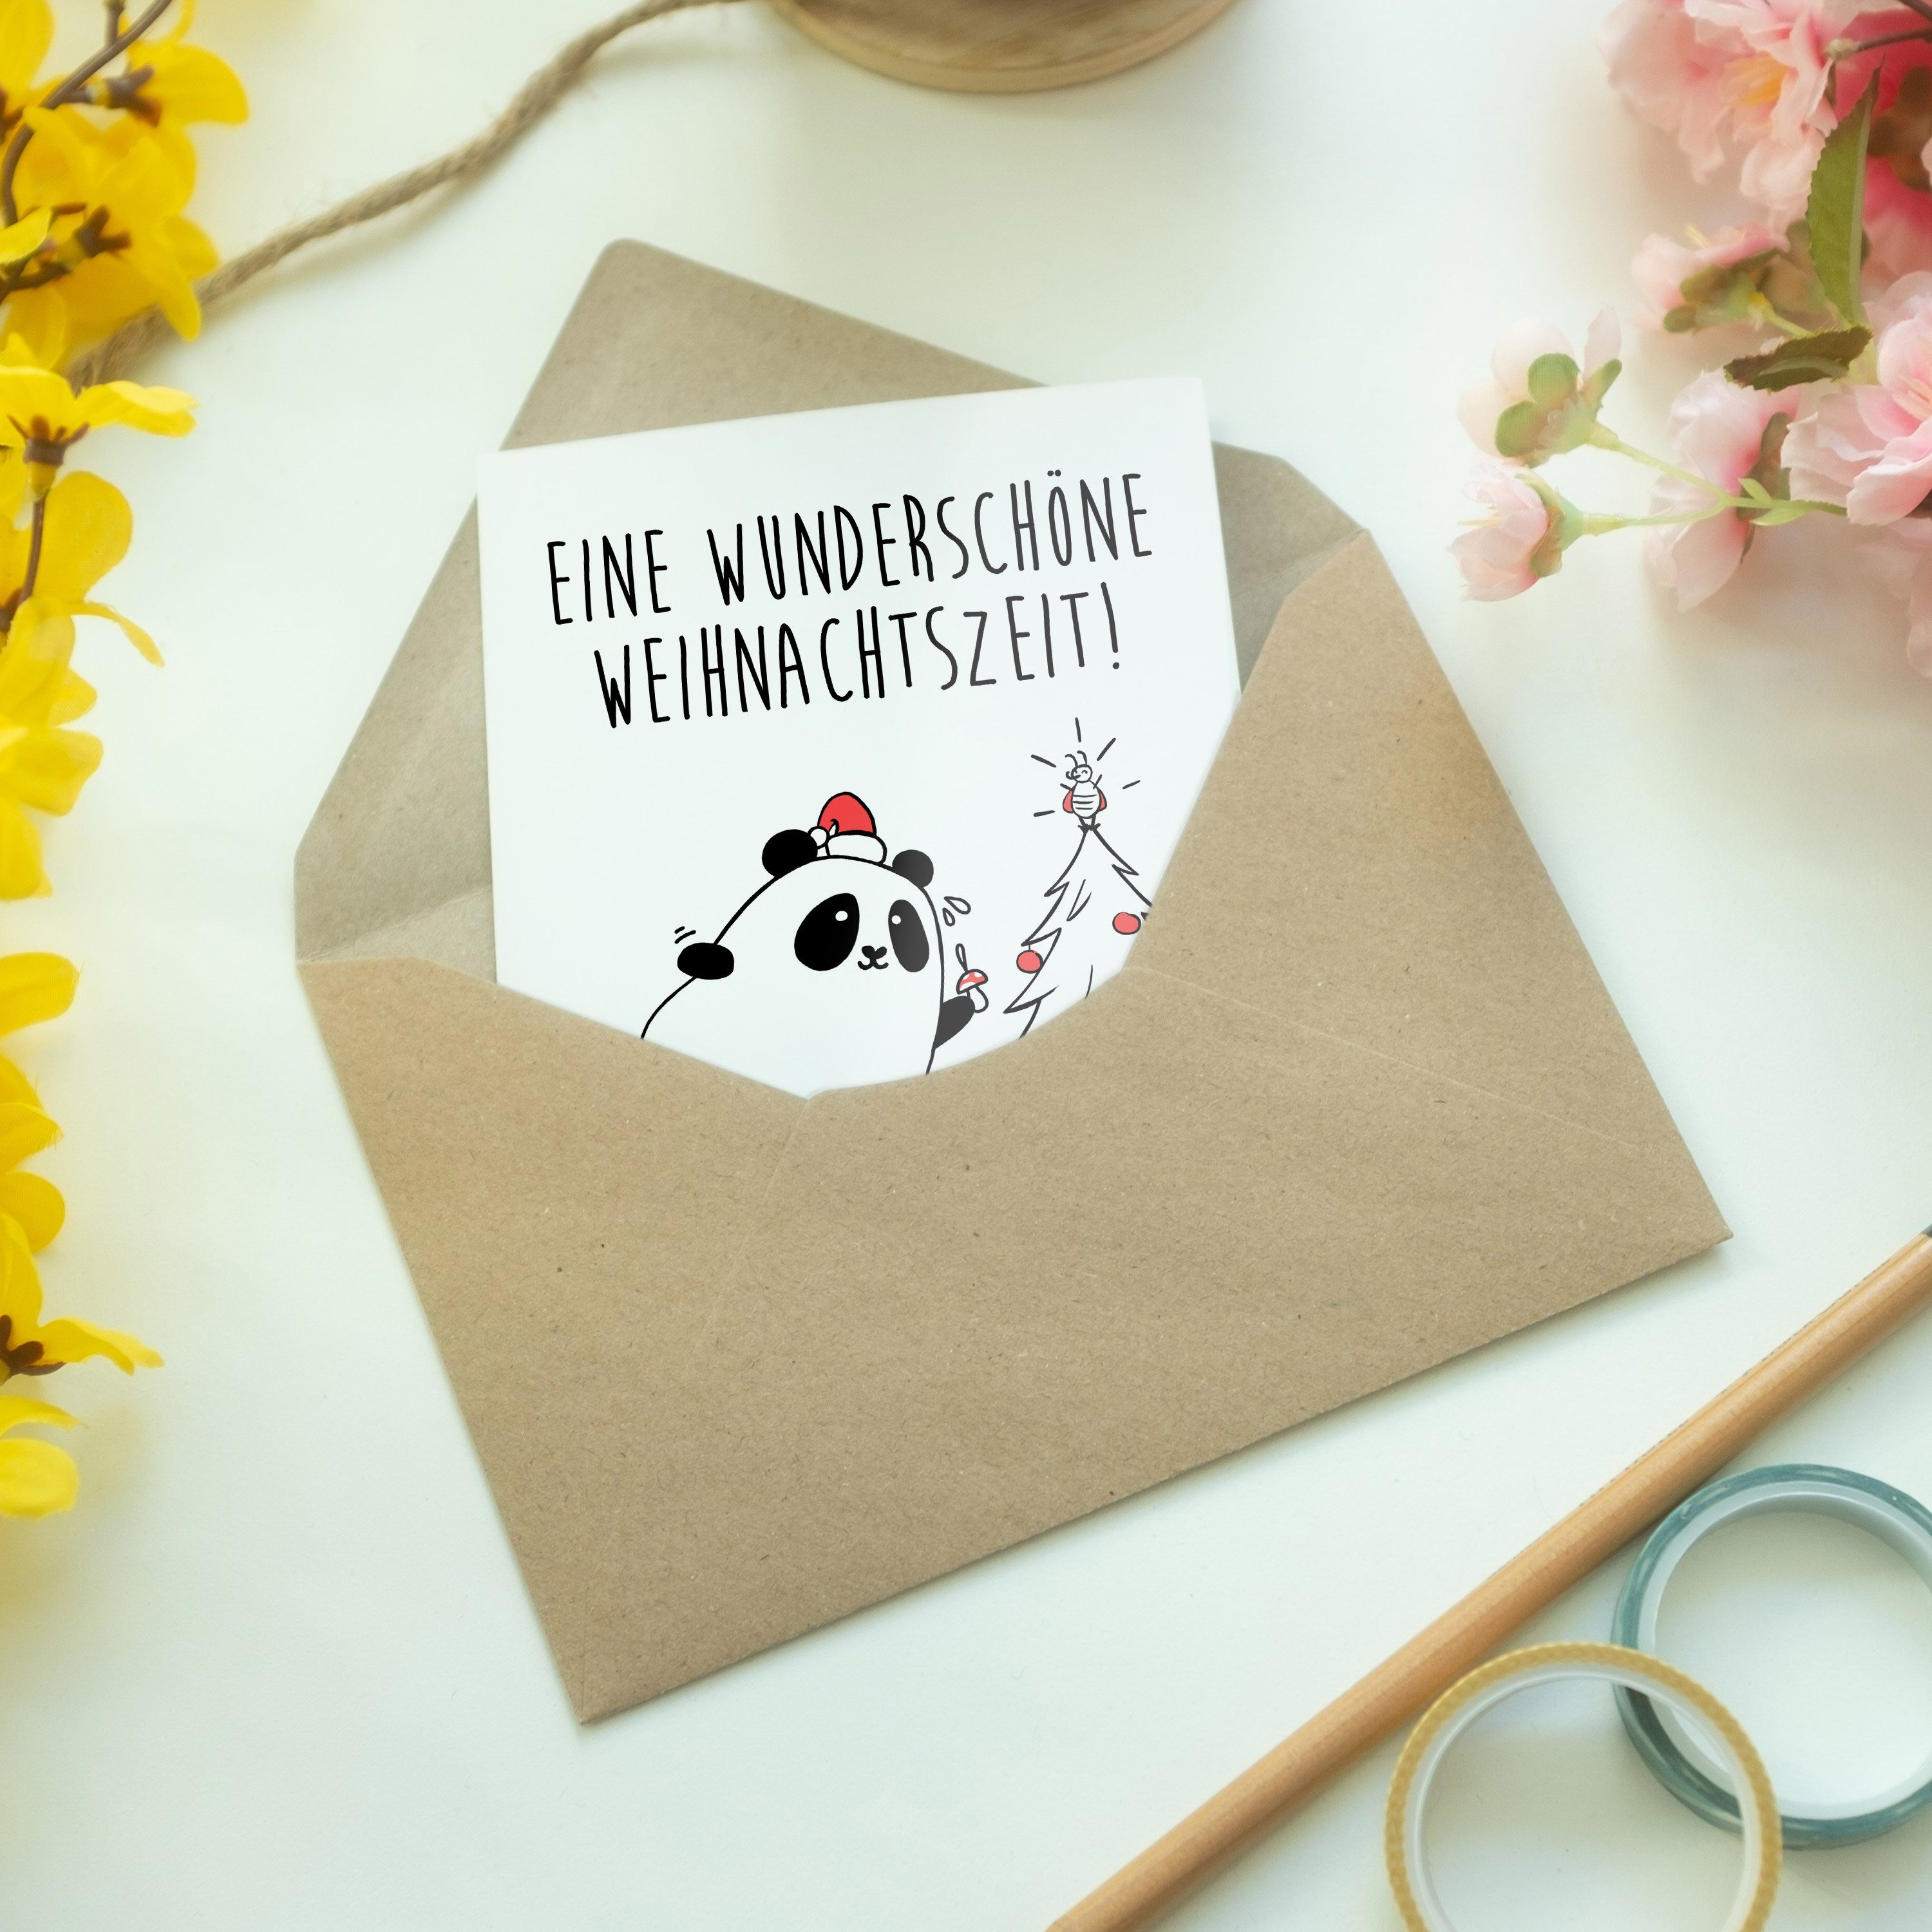 Mr. & Mrs. Panda Grußkarte Einladungskarte, Geschenk, Easy Weihnachtszeit - Klapp - Weiß & Peasy